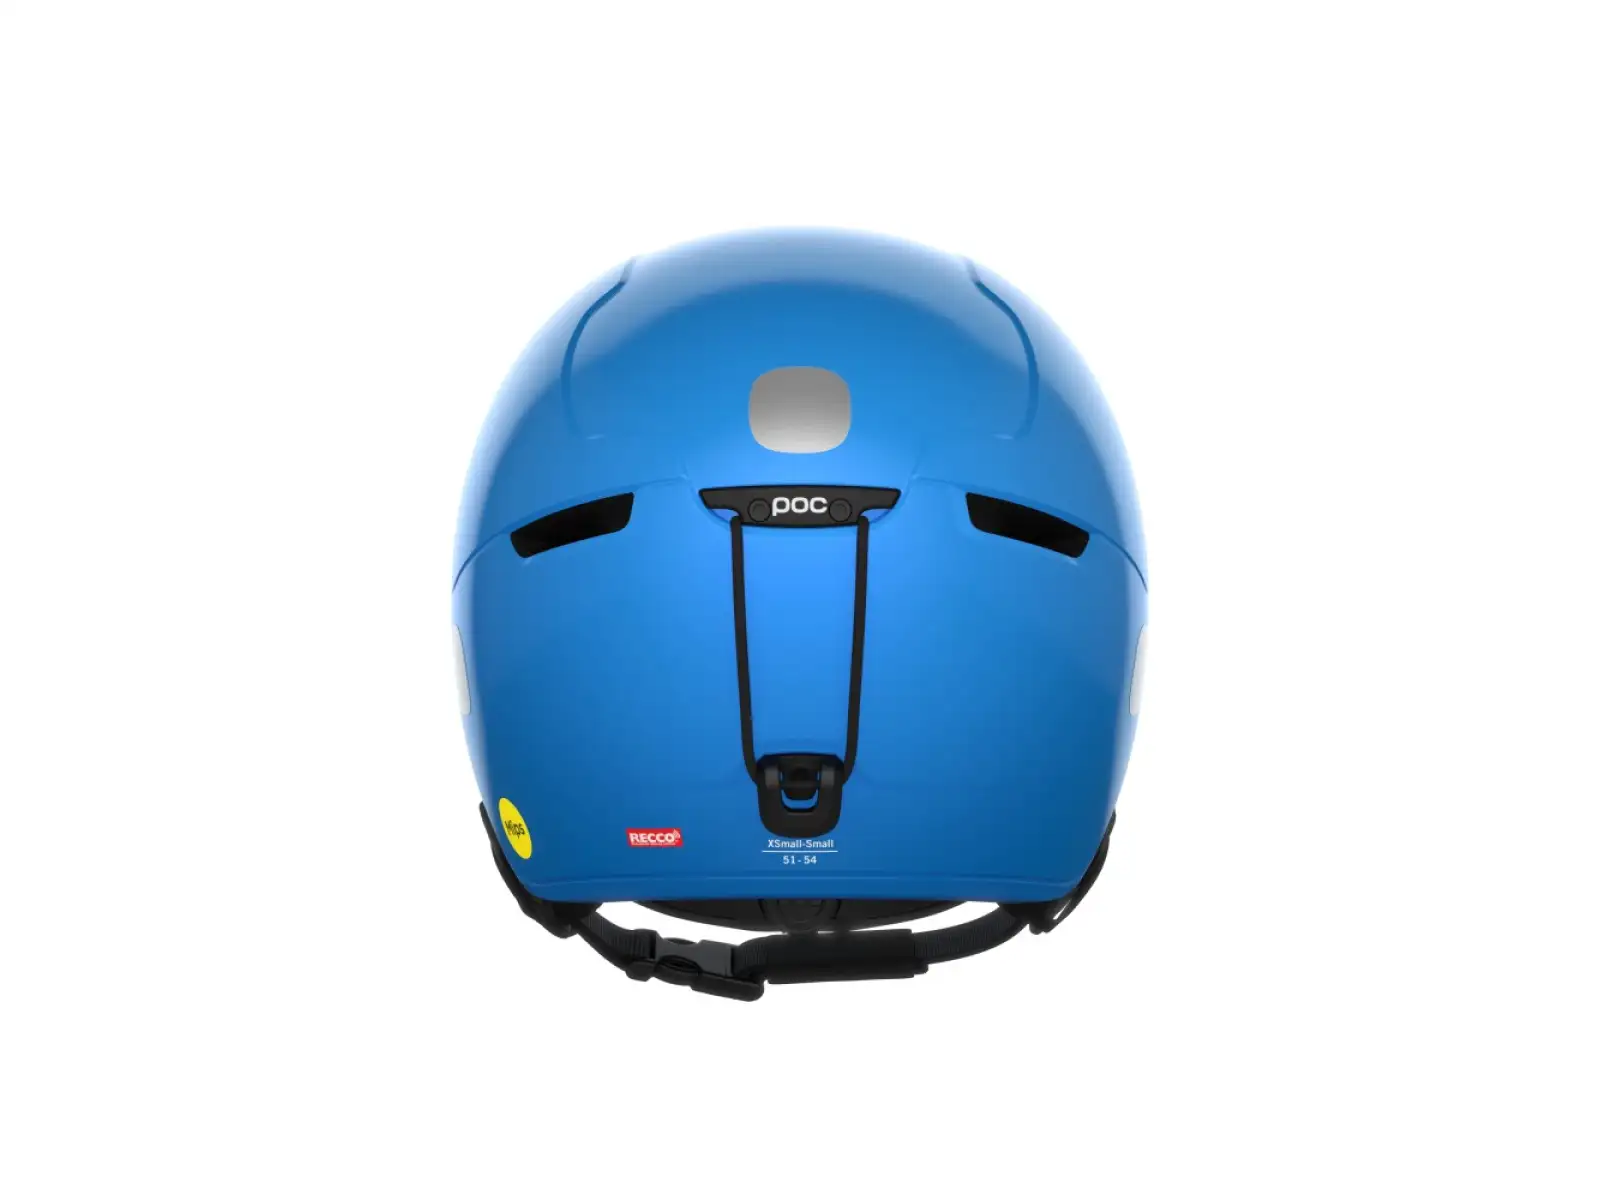 POC POCito Obex MIPS dětská lyžařská helma Fluorescent Blue, vel. M-L